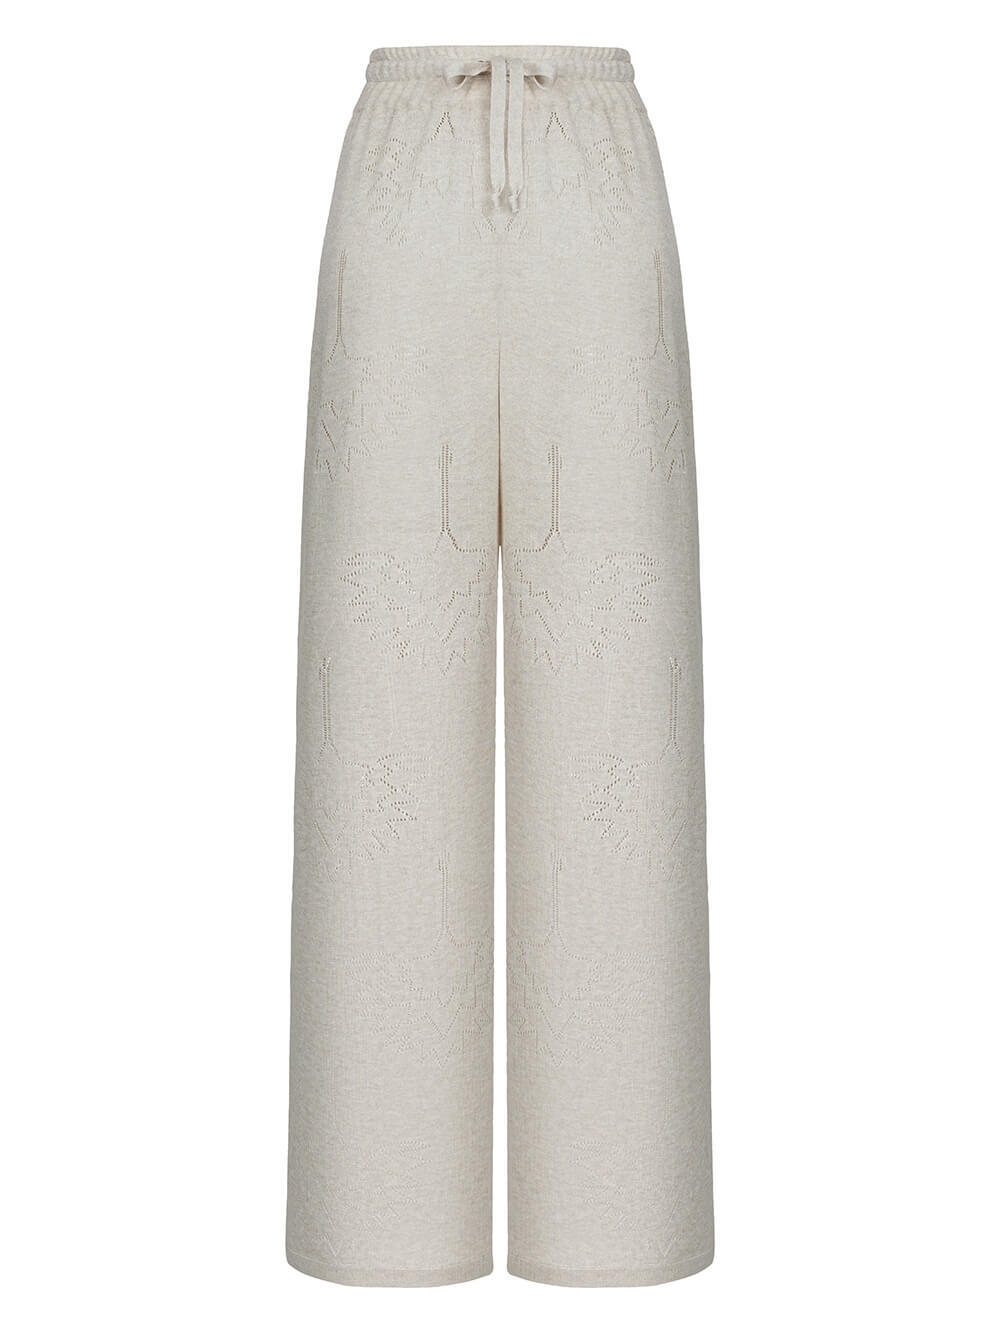 Женские брюки песочного цвета из вискозы - фото 1